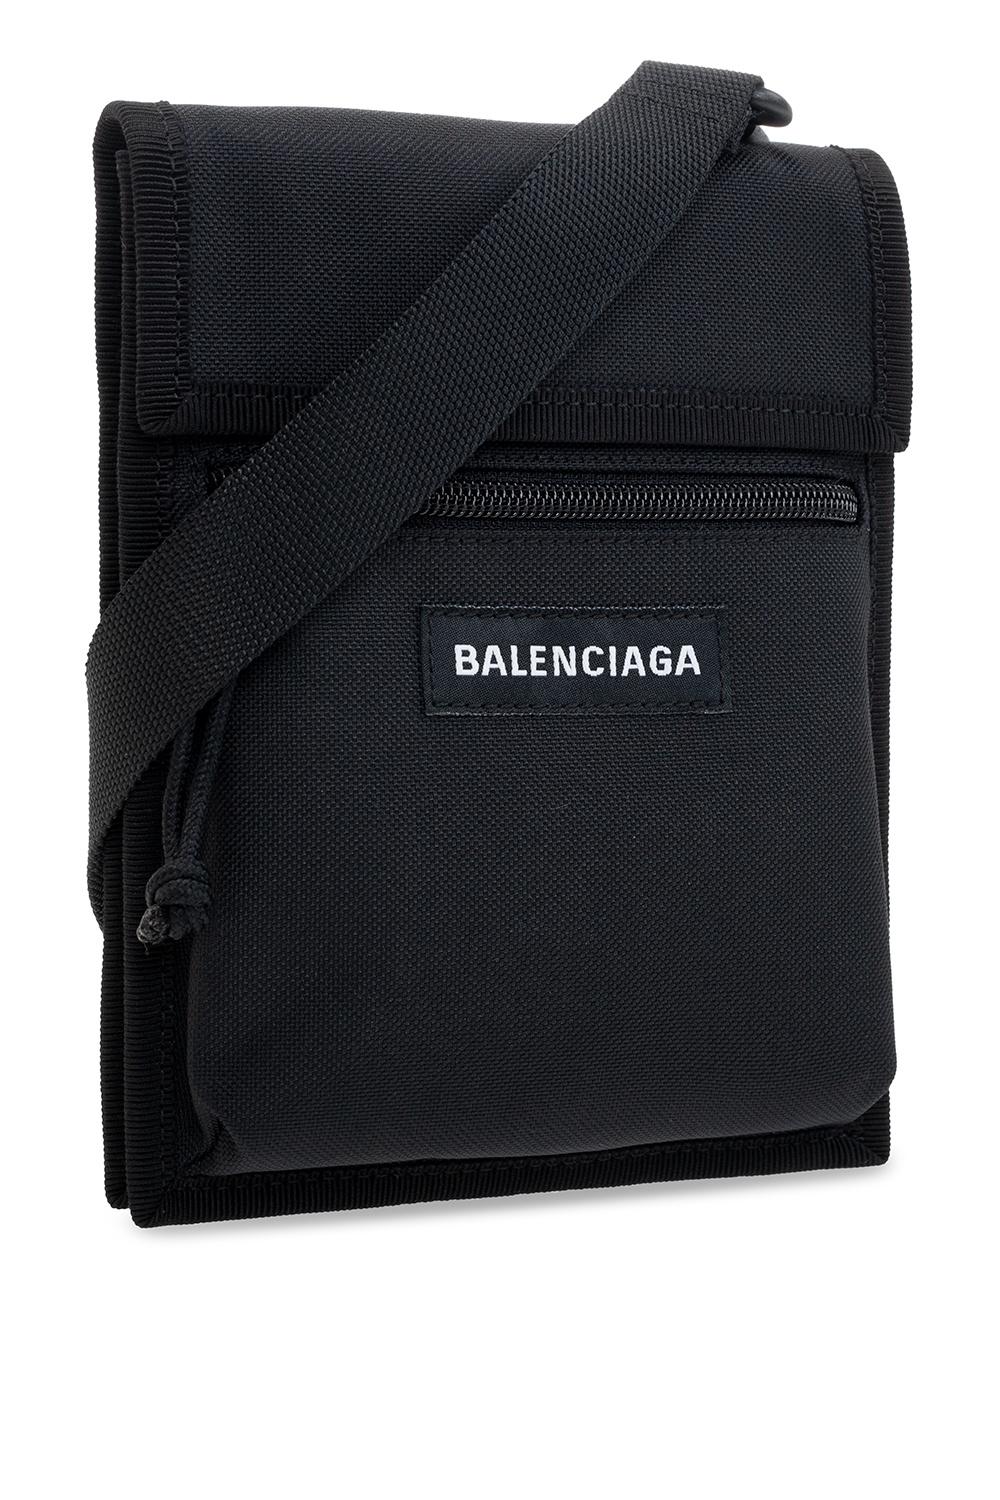 Balenciaga Leather 'explorer' Shoulder Bag in Black for Men | Lyst